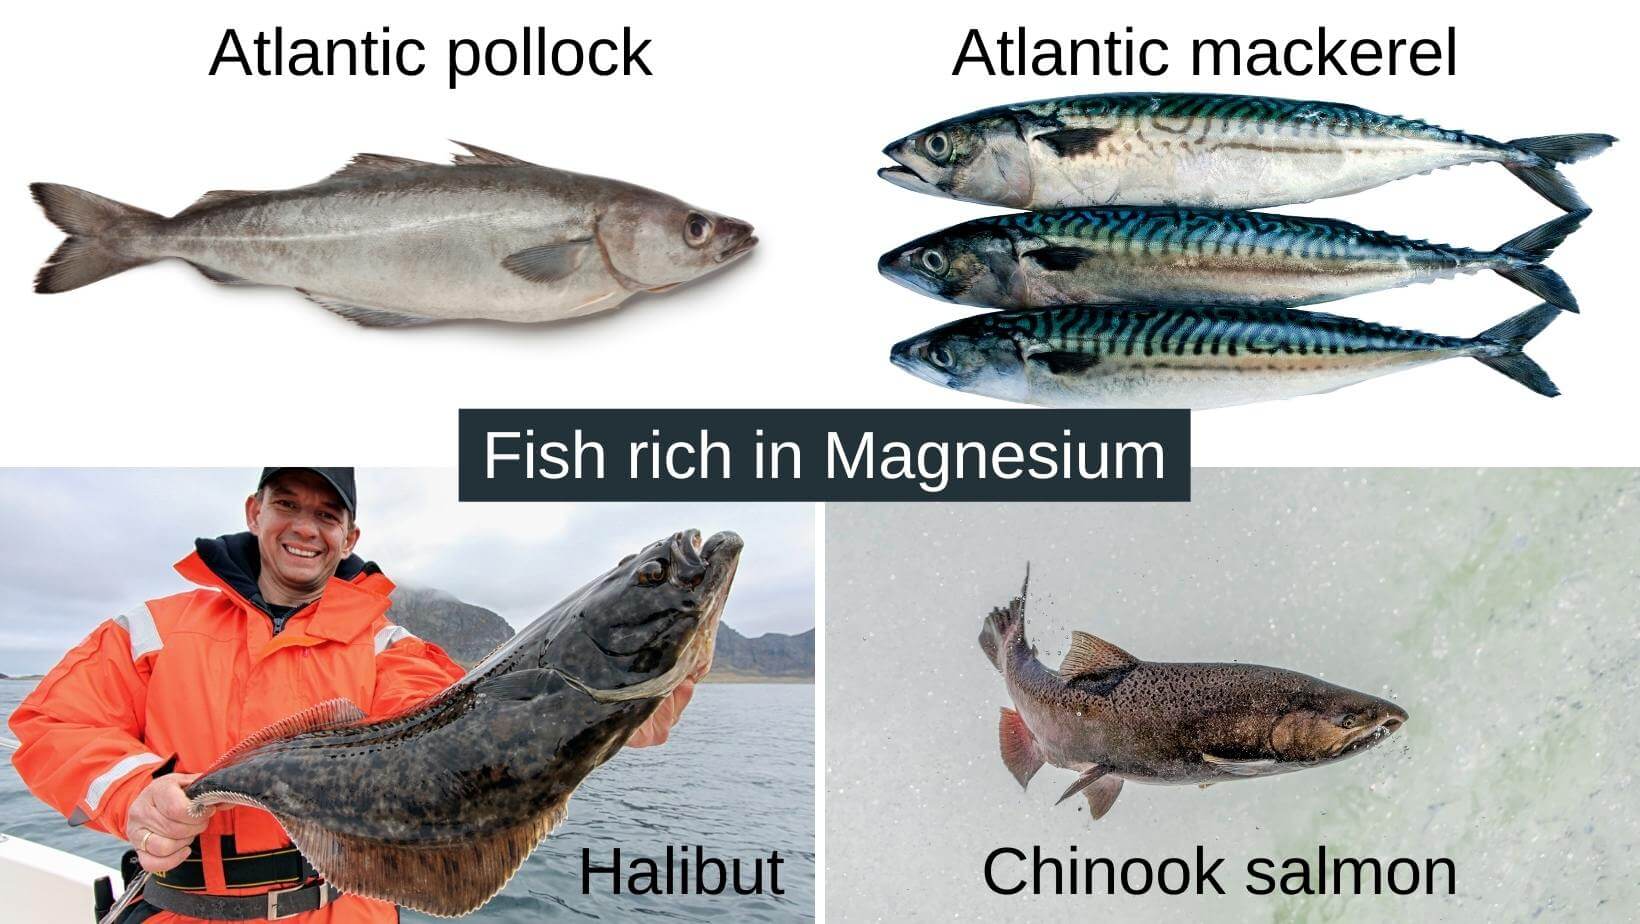 Fish high in magnesium